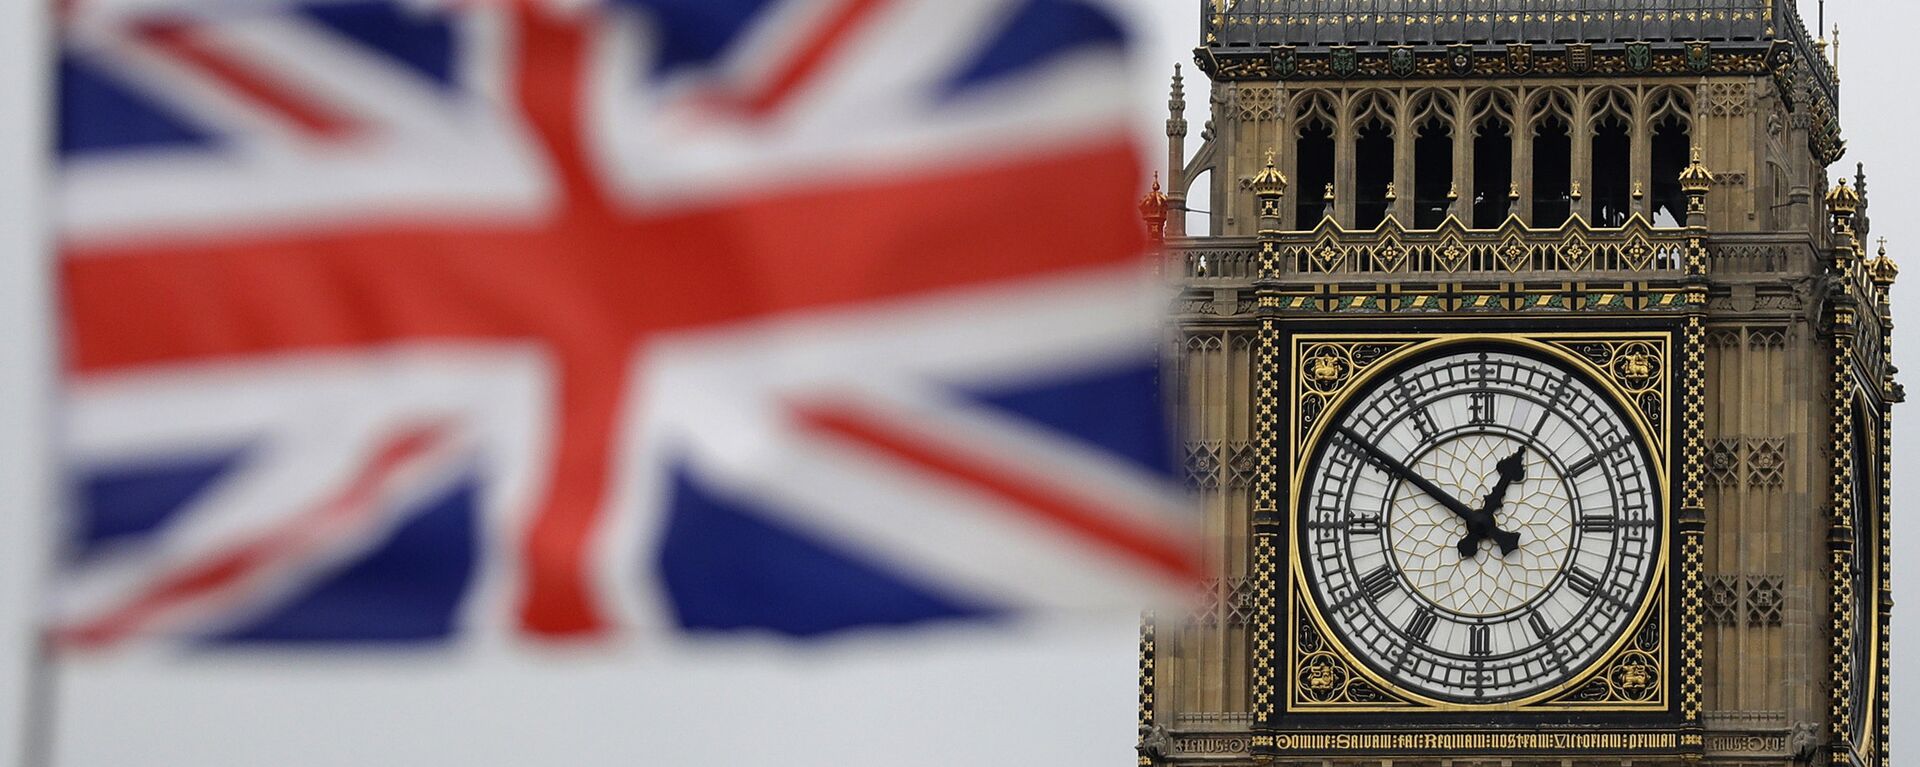 Застава Велике Британије испред Биг Бена у Лондону. - Sputnik Србија, 1920, 15.03.2022